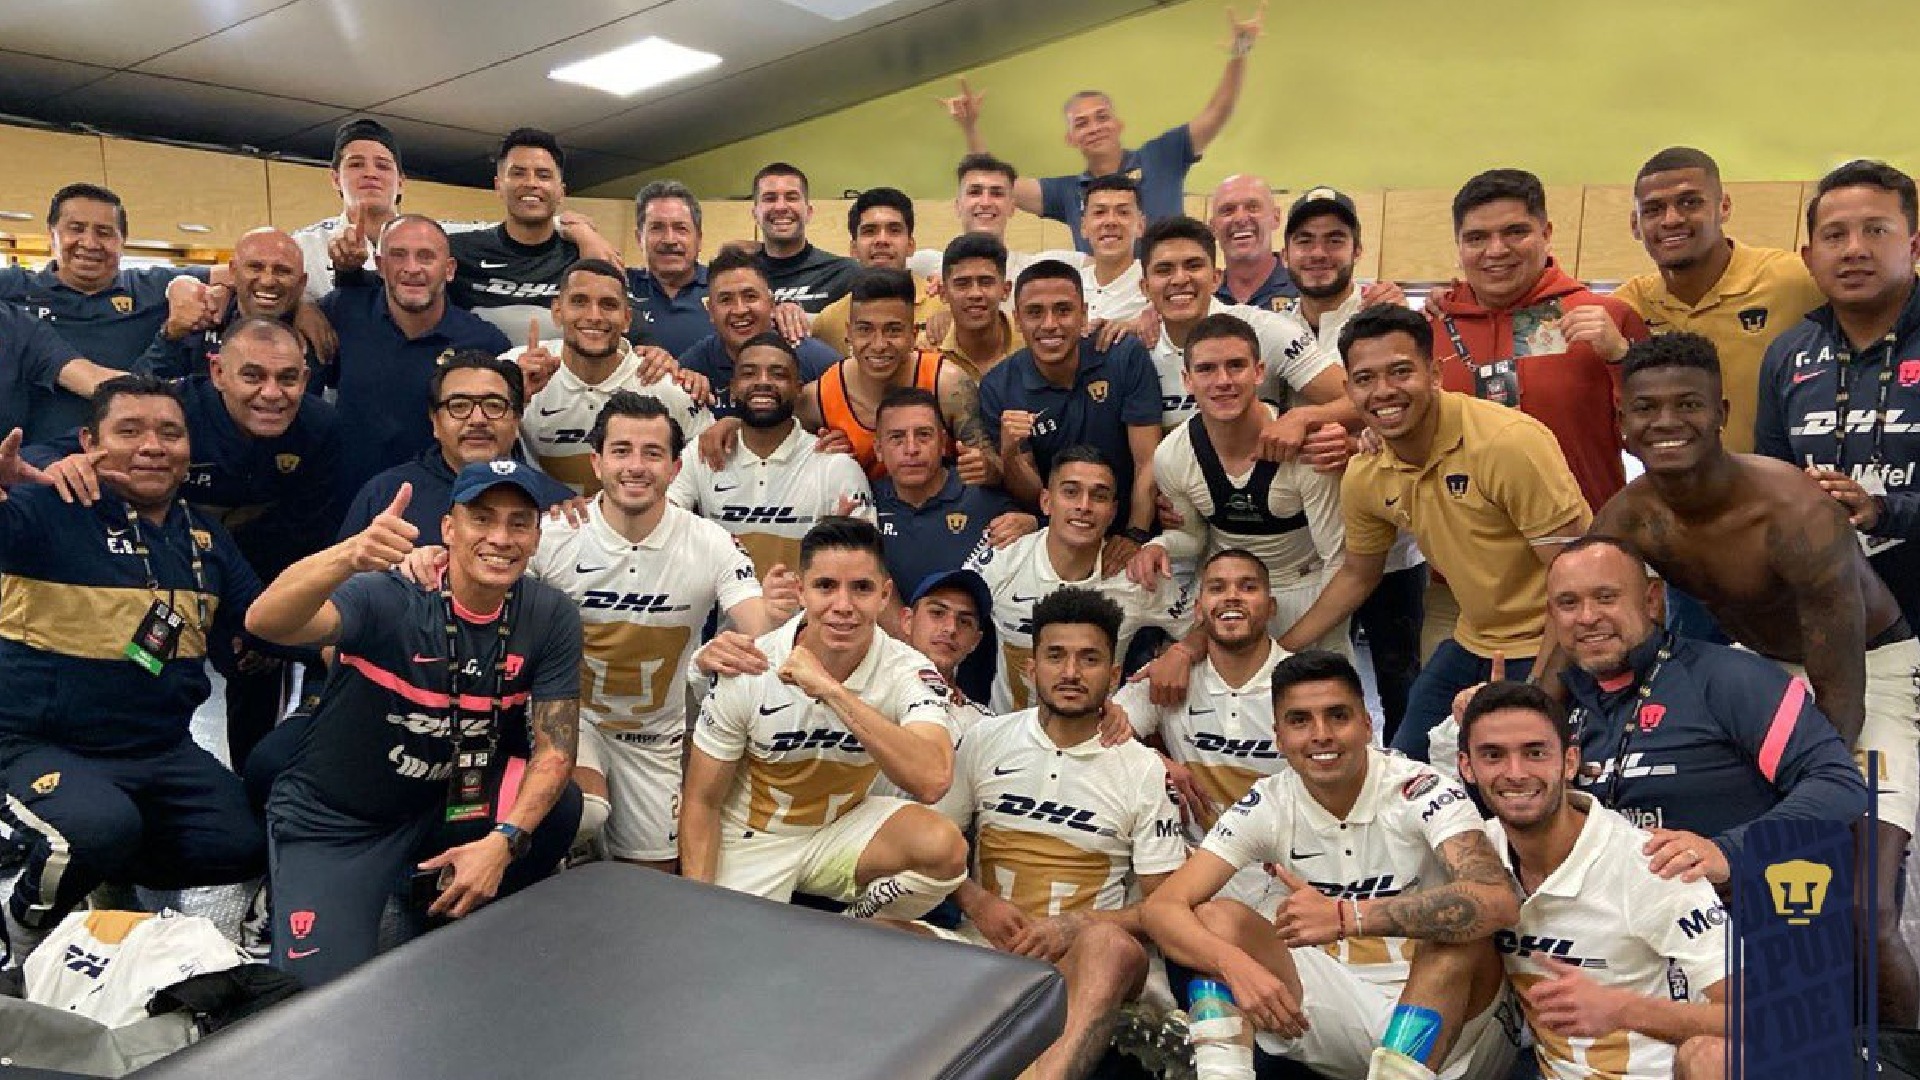 El Club Universidad Nacional será el primer equipo mexicano en disputar los dos torneos organizados por Real Madrid y FC Barcelona, y cuenta con la oportunidad de ser el pionero en ganar ambos (Foto: Twitter/@TheChampions)